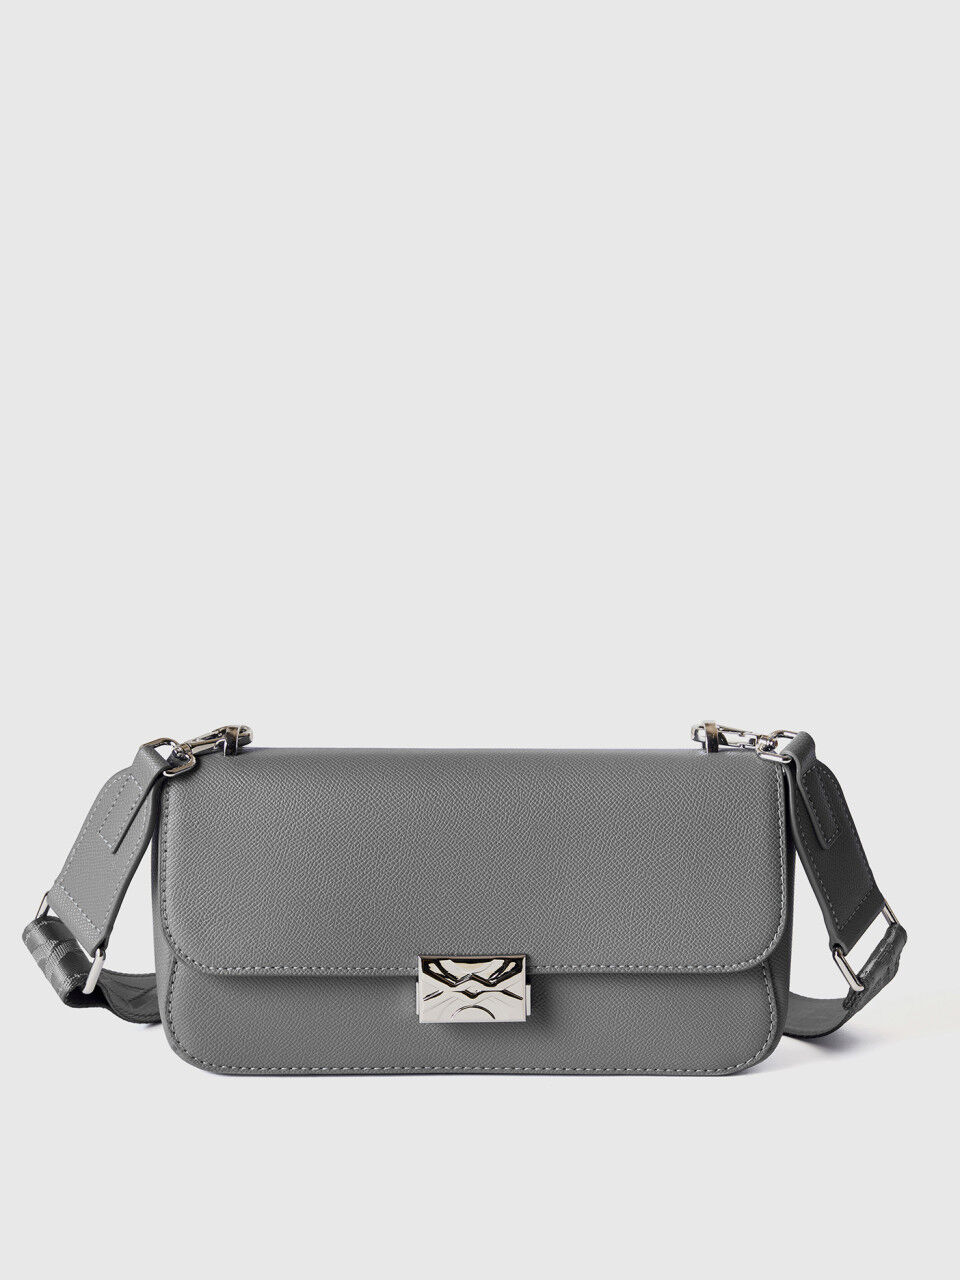 Medium gray Be Bag